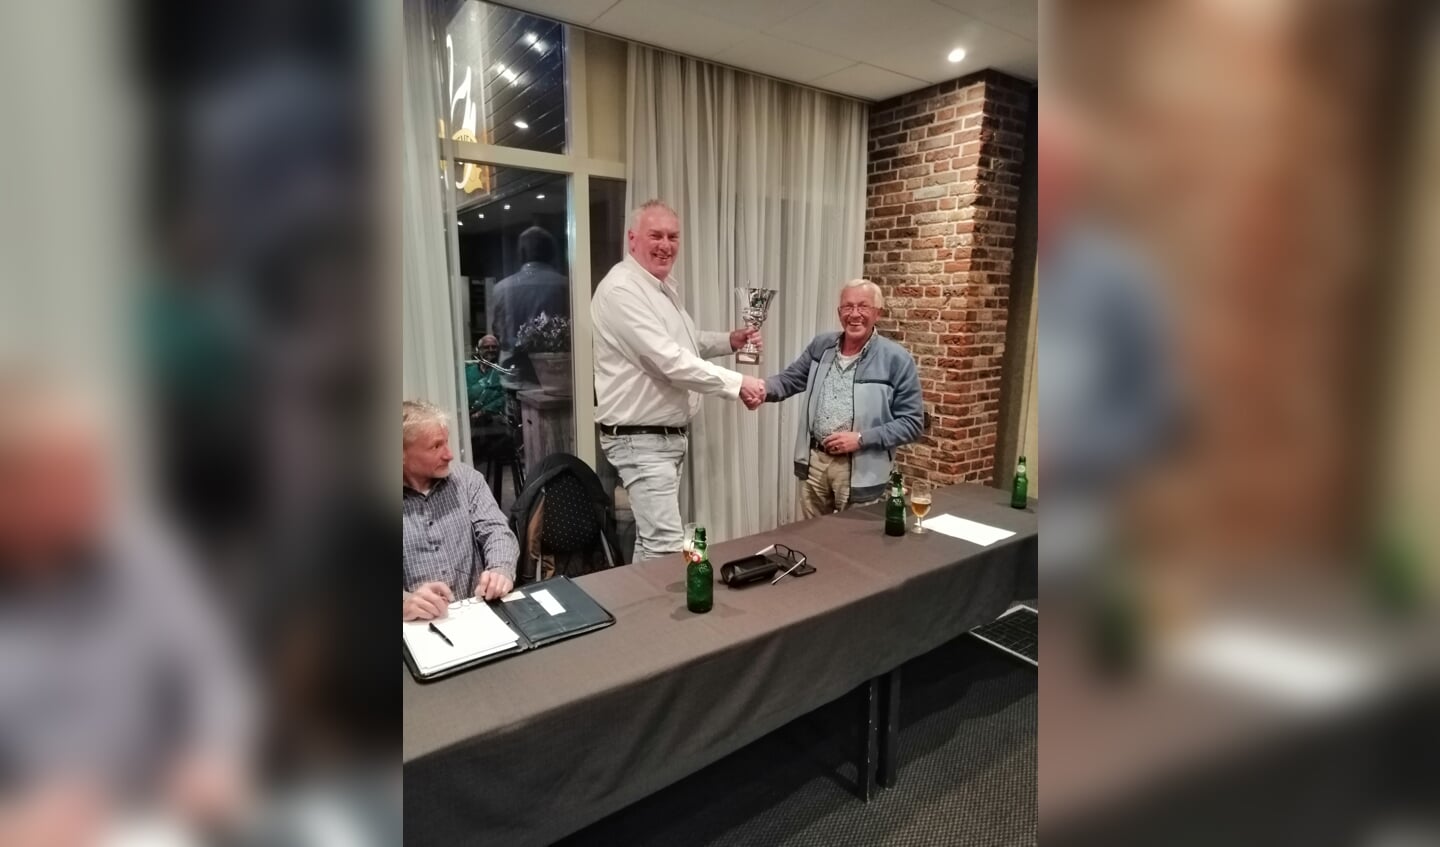 Clubkampioen Geert Koster wordt gefeliciteerd door voorzitter Gert-Jan van Vliet. Foto: Peter Rijntjes